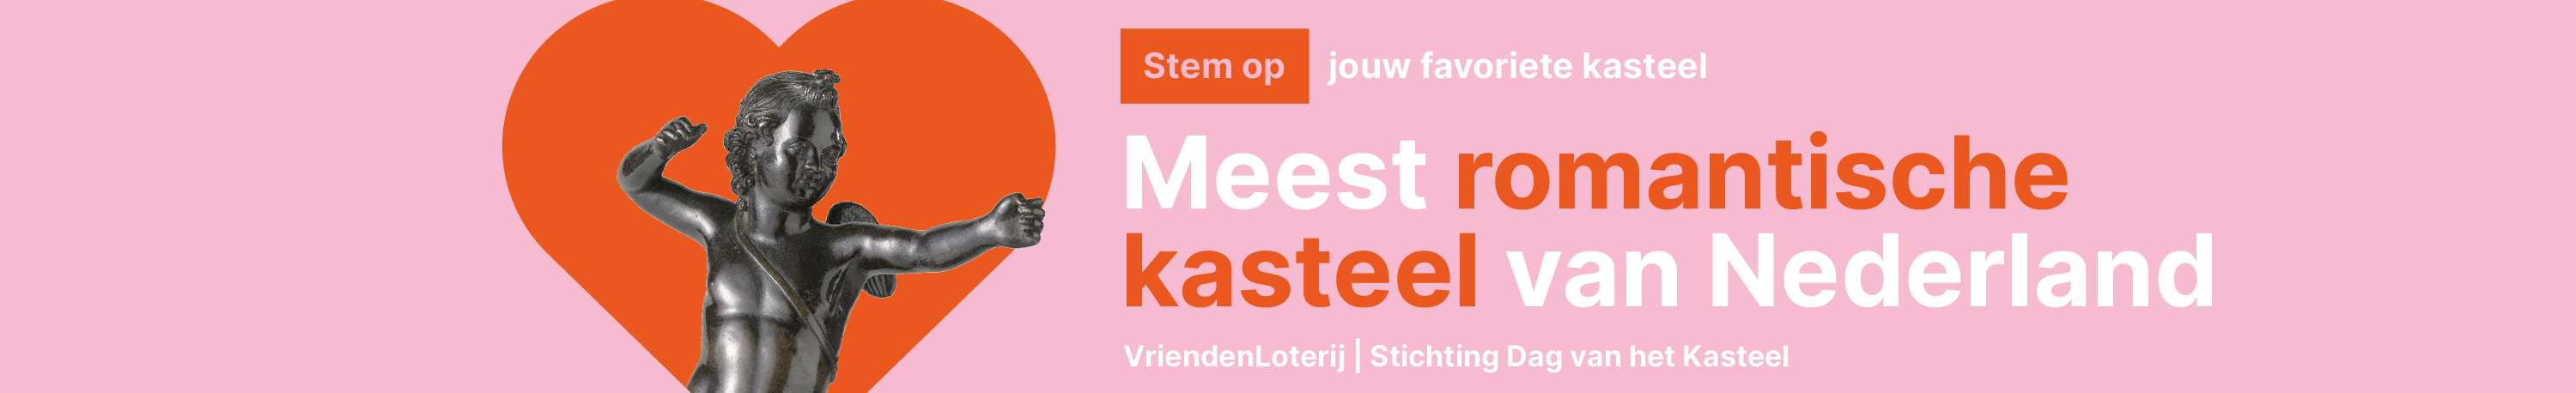 Publieksverkiezing Meest Romantische Kasteel van Nederland trekt bijna 16.000 stemmers.